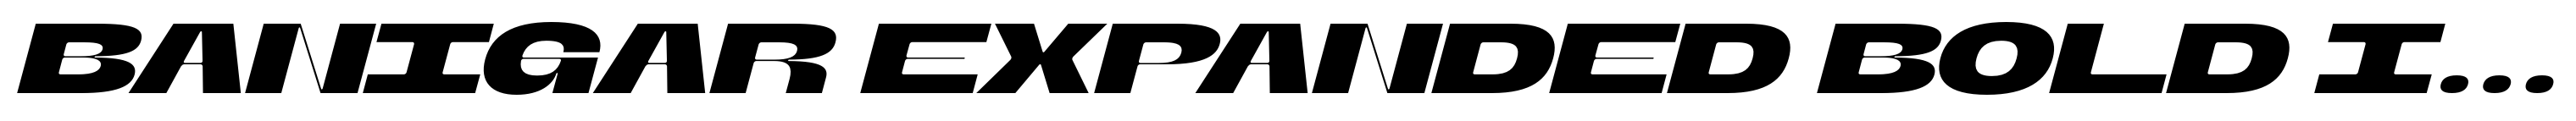 Banigar Expanded Bold Italic